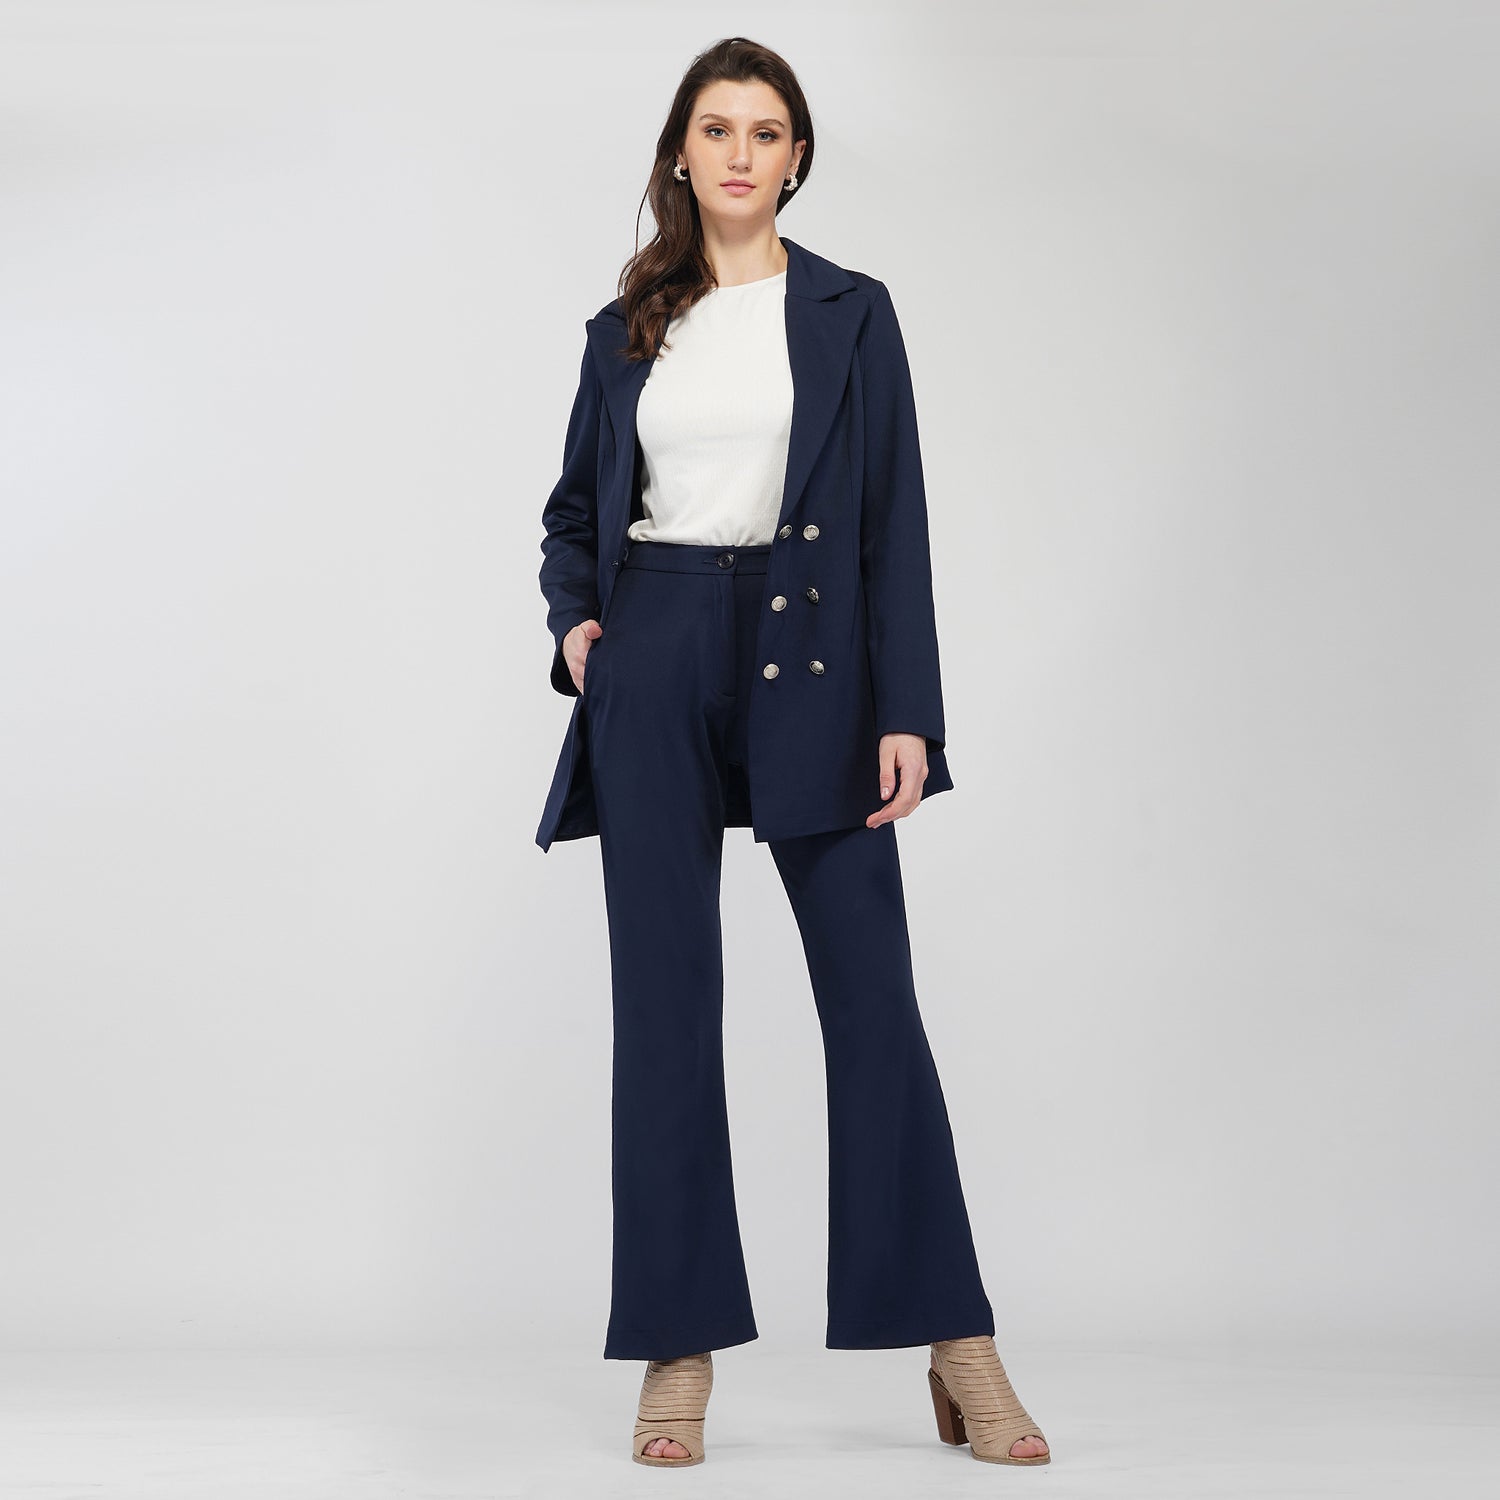 Women Business Slim Office Outfits Work Wear Trouser Two Piece Set Blazer  Pants | eBay